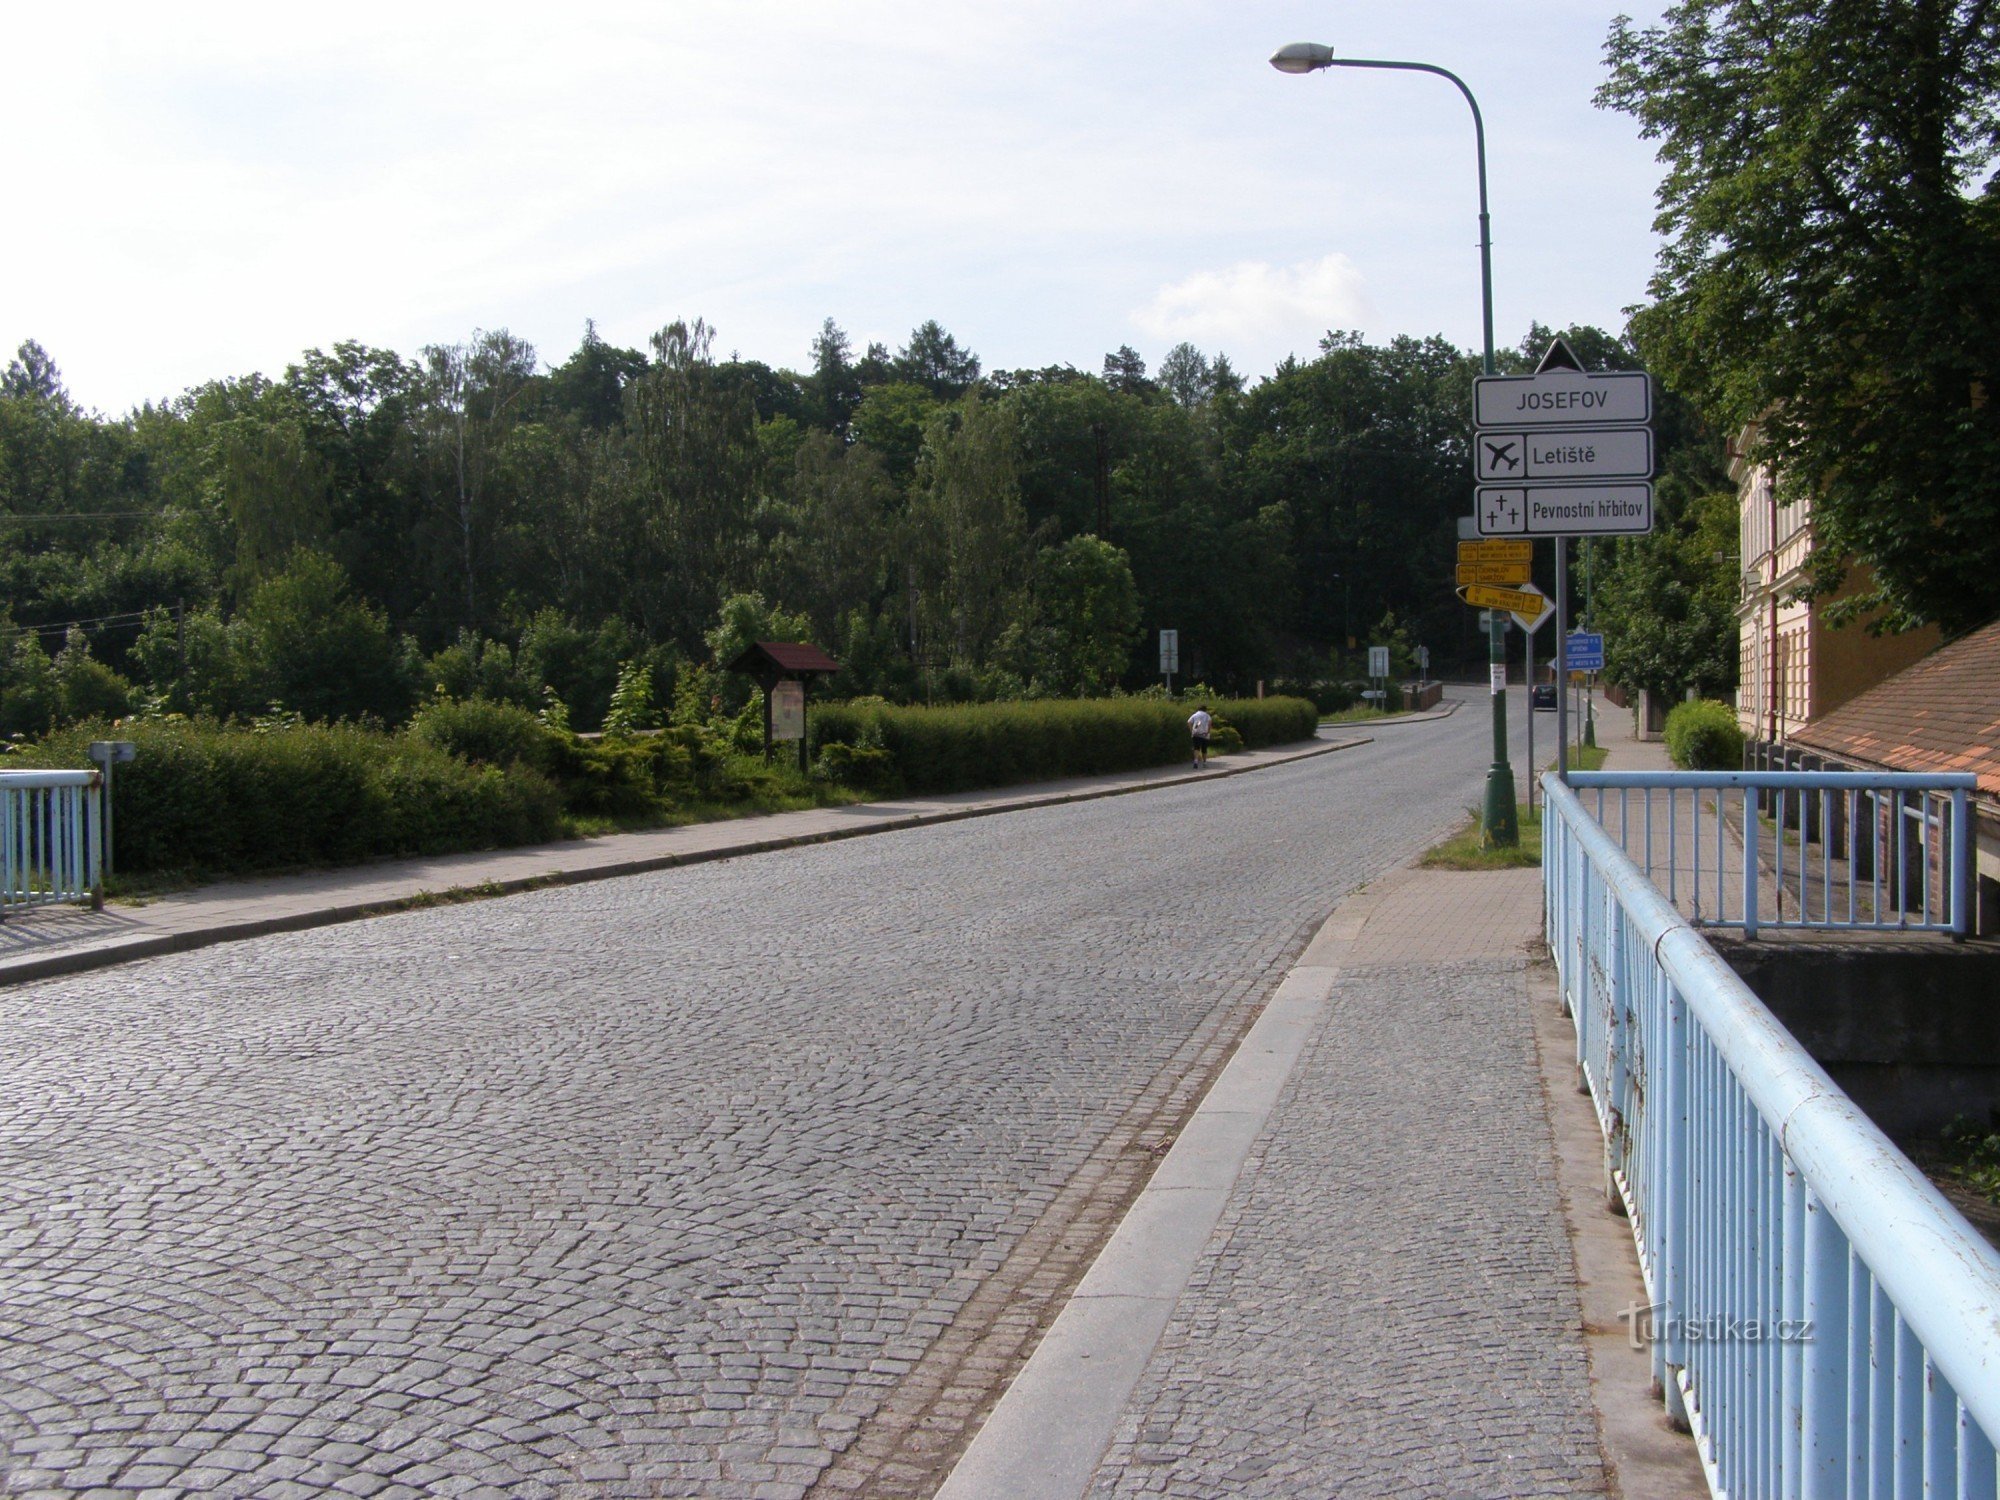 自行车旅游十字路口 - Josefov，桥附近